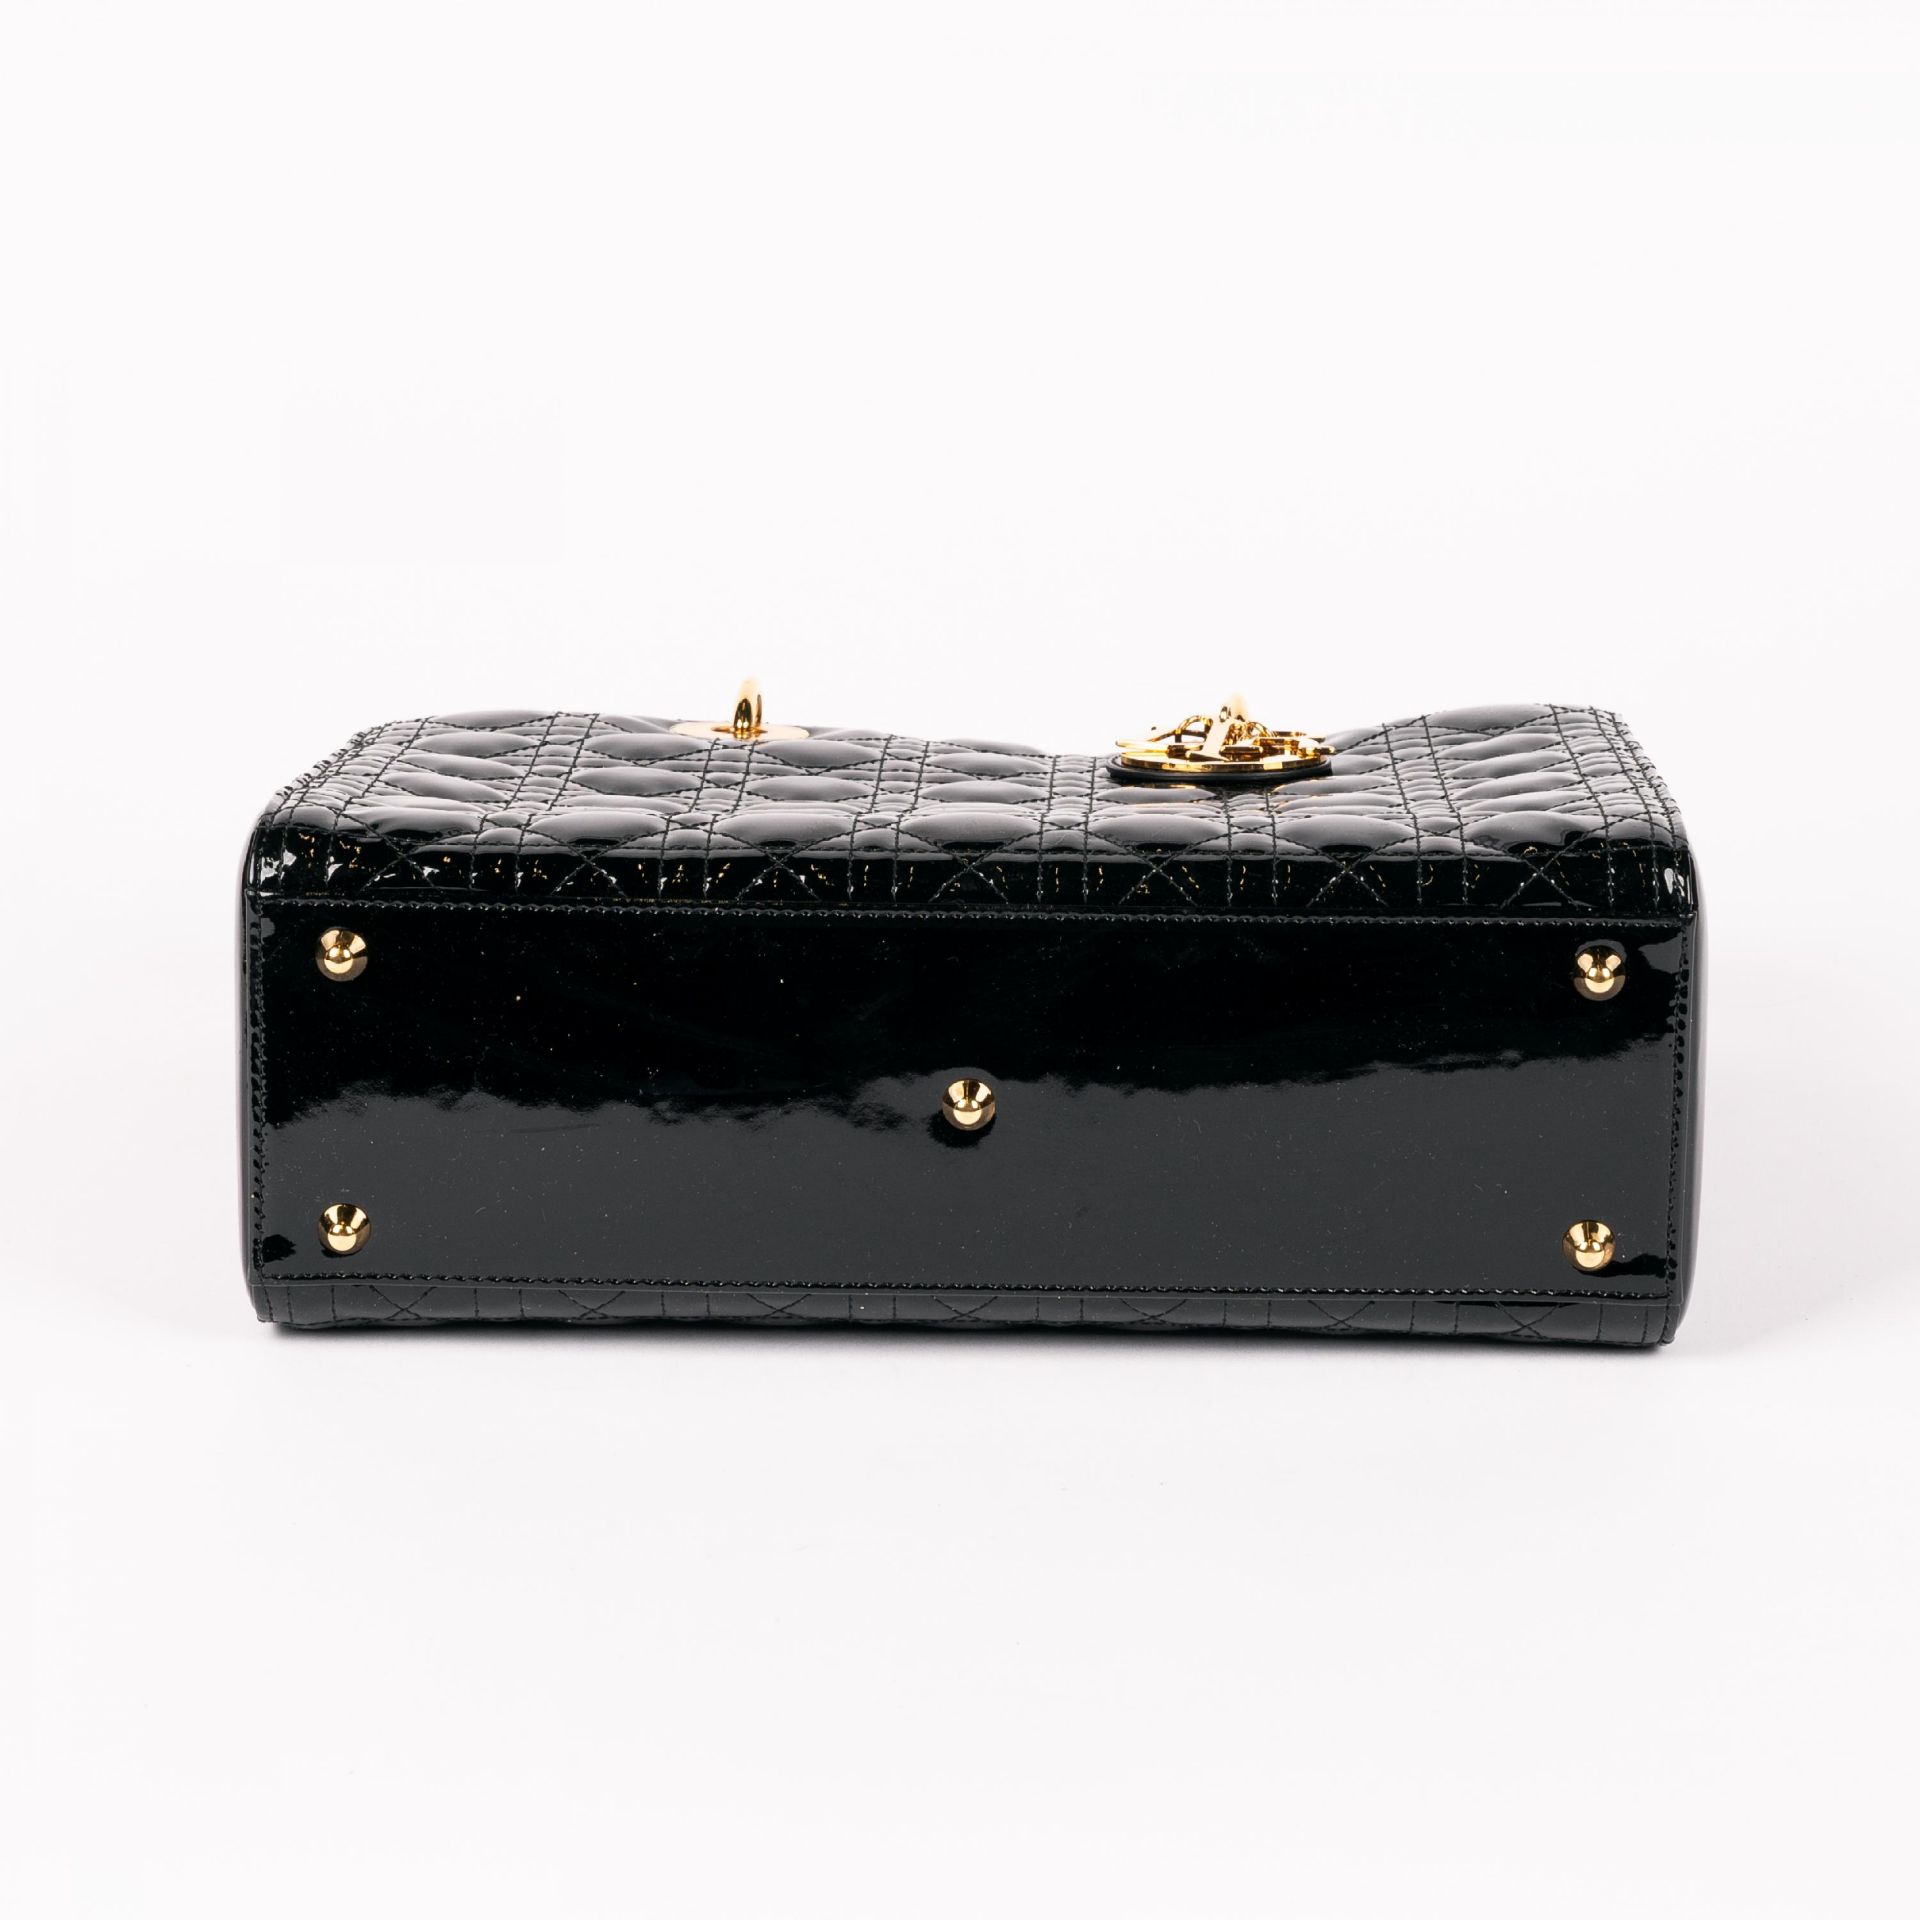 Christian Dior: Handtasche 'Lady Dior' - Bild 5 aus 6